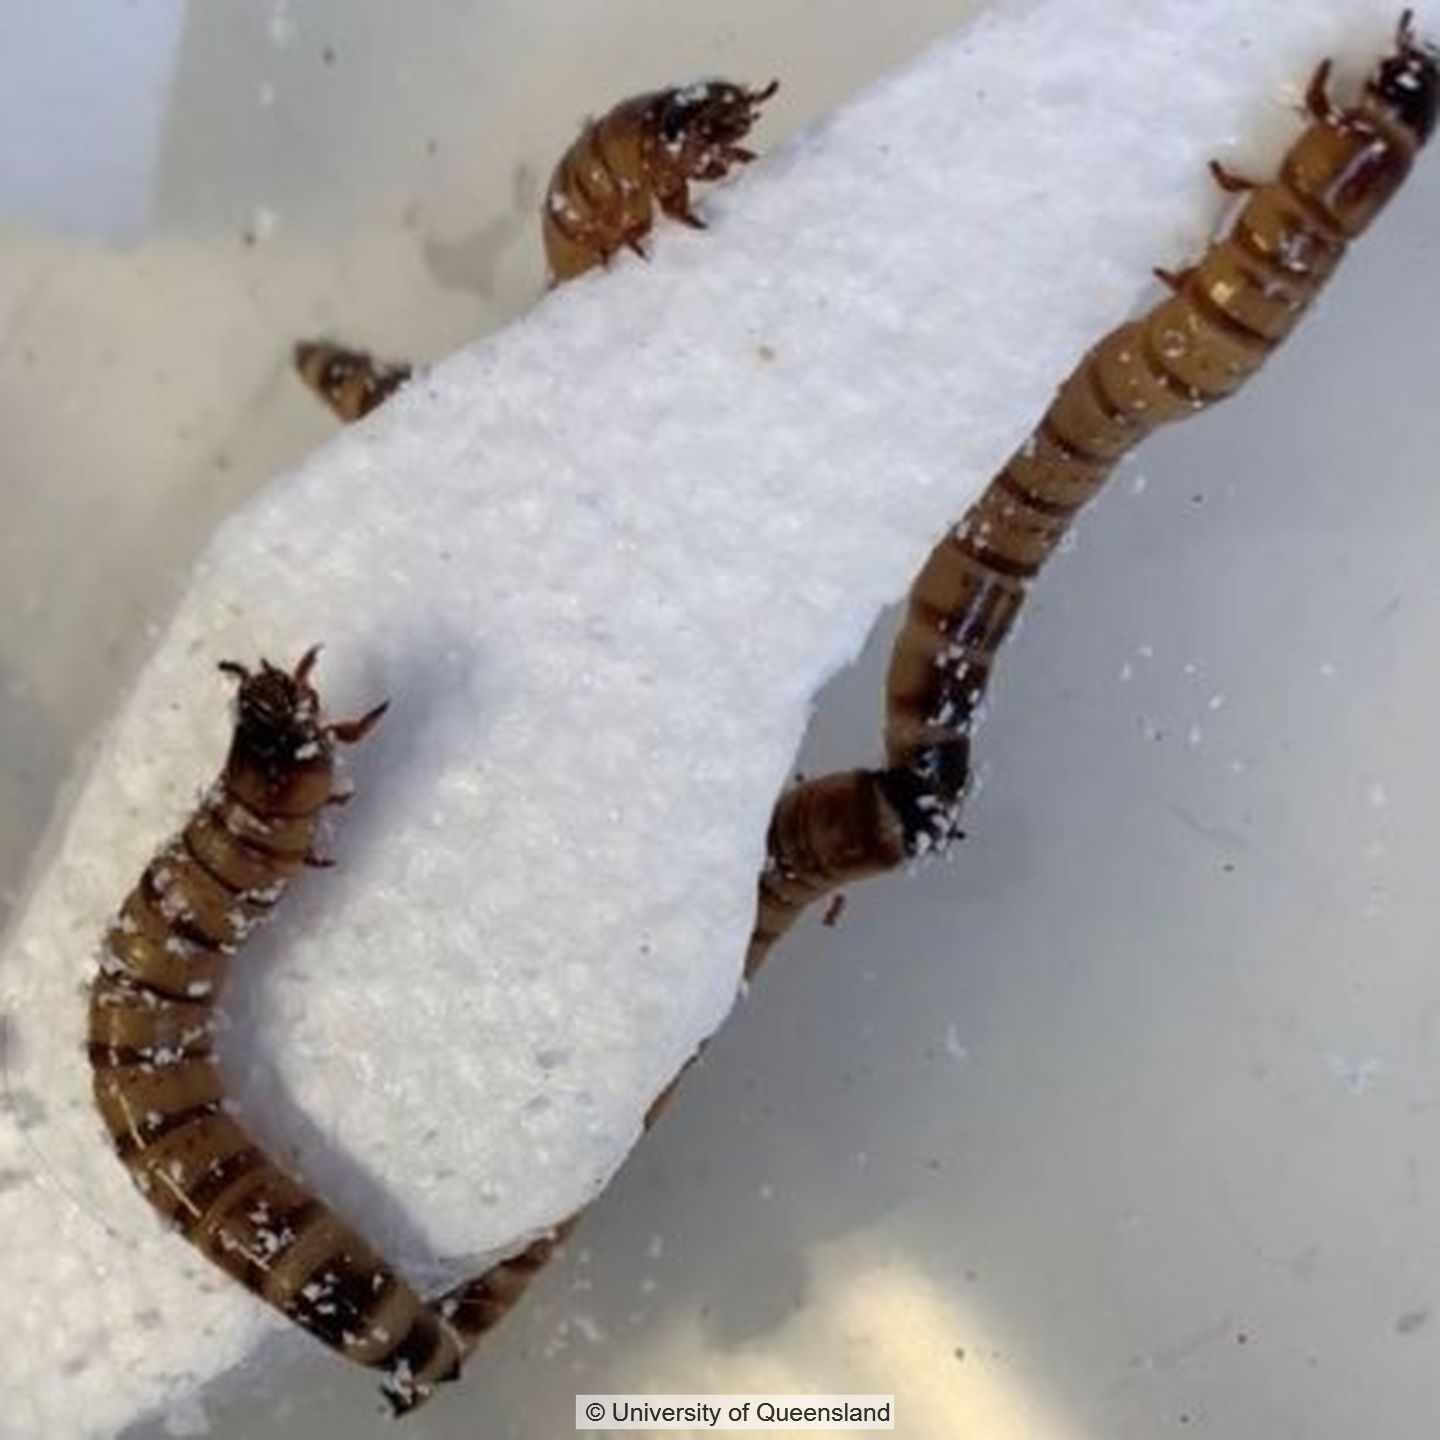 Drei Würmer krabbeln an Styropor entlang.